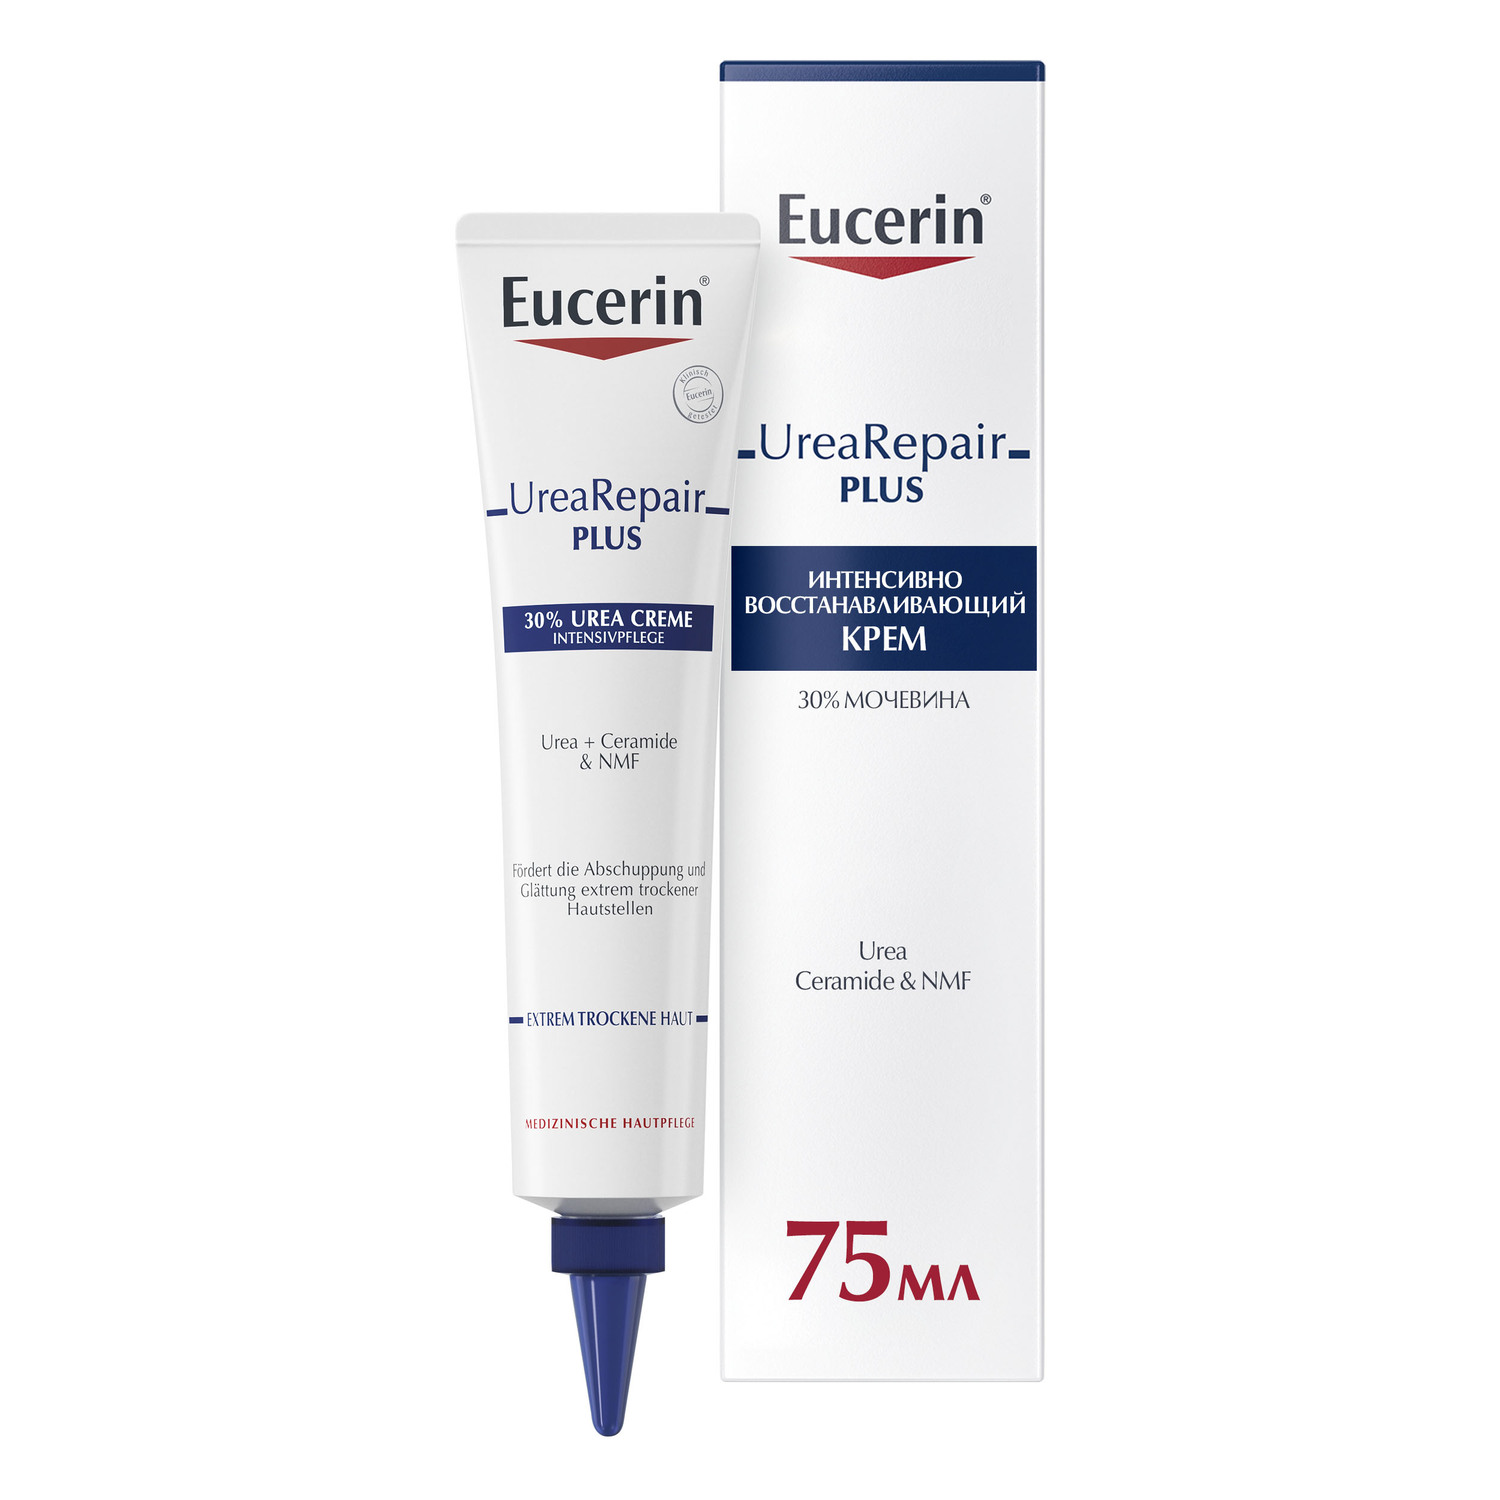 Eucerin Интенсивно восстанавливающий крем с 30% мочевиной, 75 мл (Eucerin, UreaRepair) интенсивно восстанавливающий крем для ног eucerin urearepair 75 мл